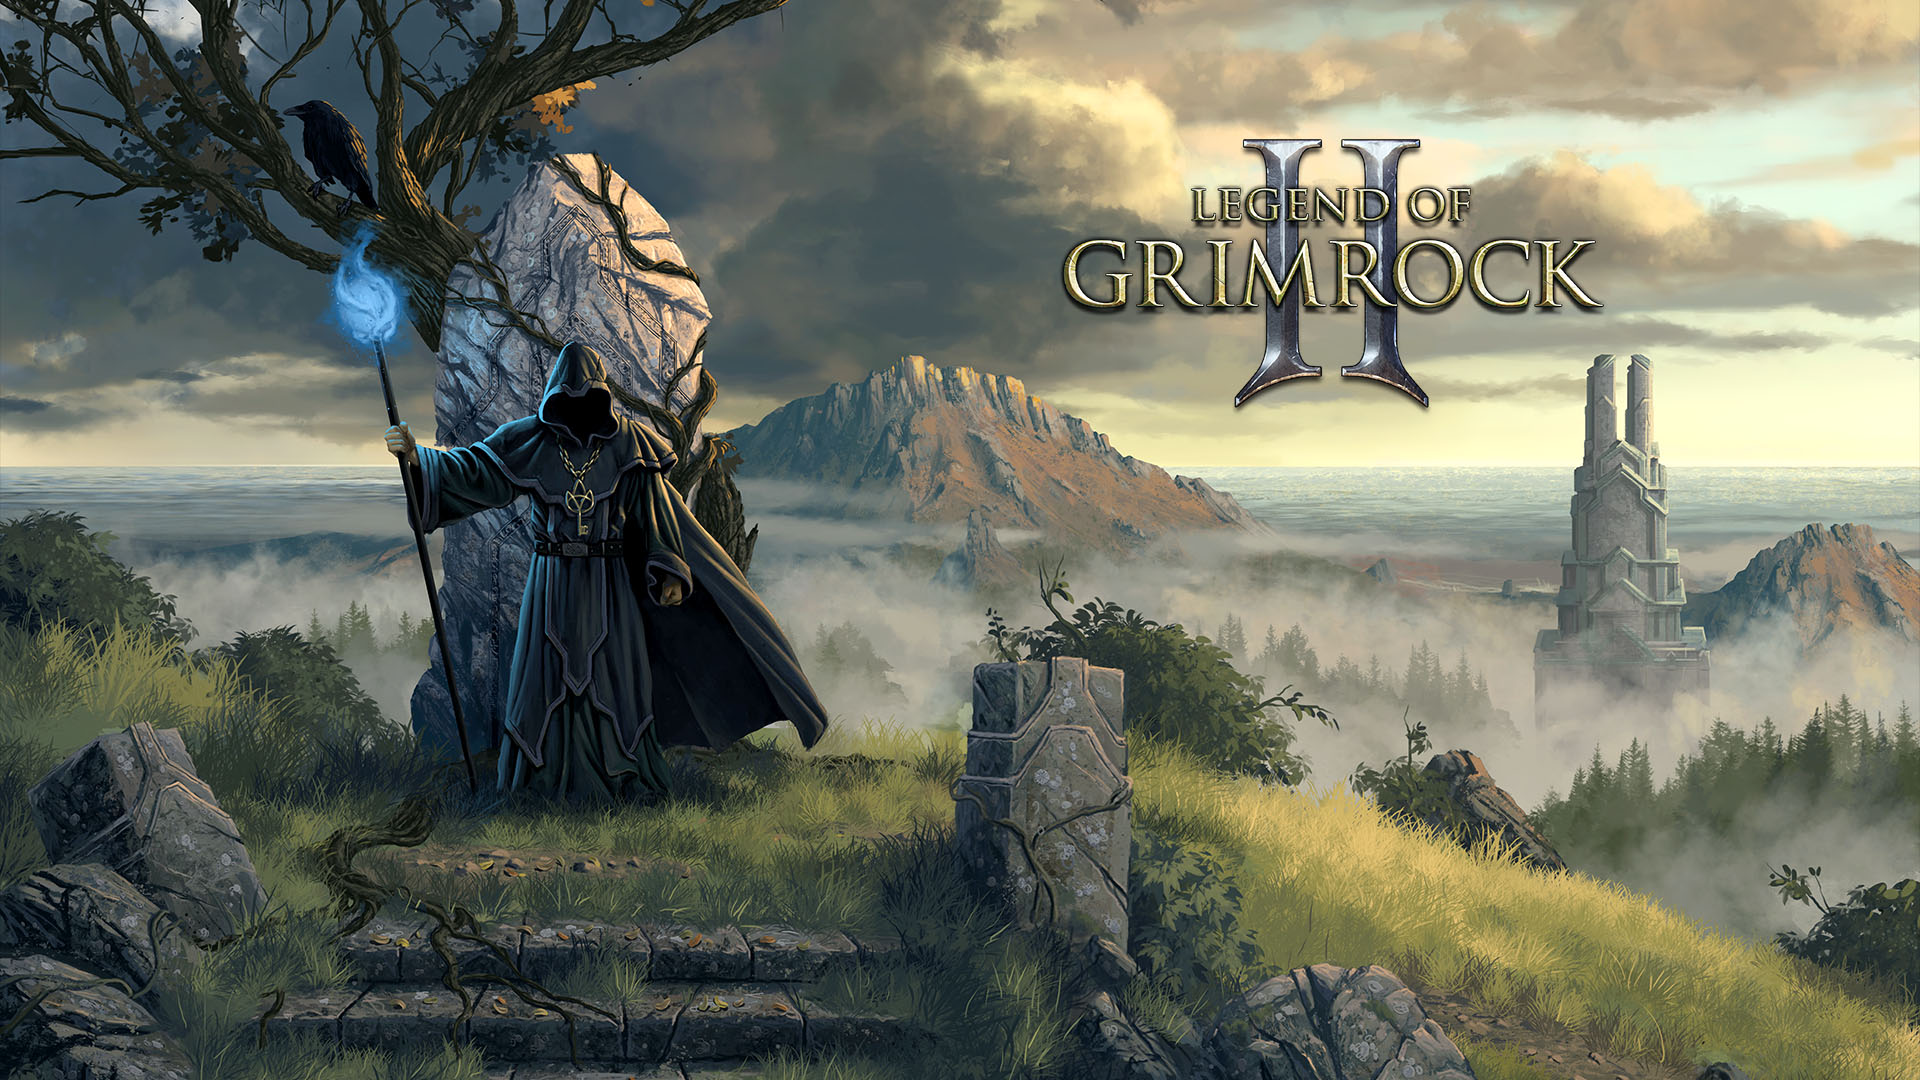 Legend of Grimrock 2 Free Download Download Legend of Grimrock 2 for PC